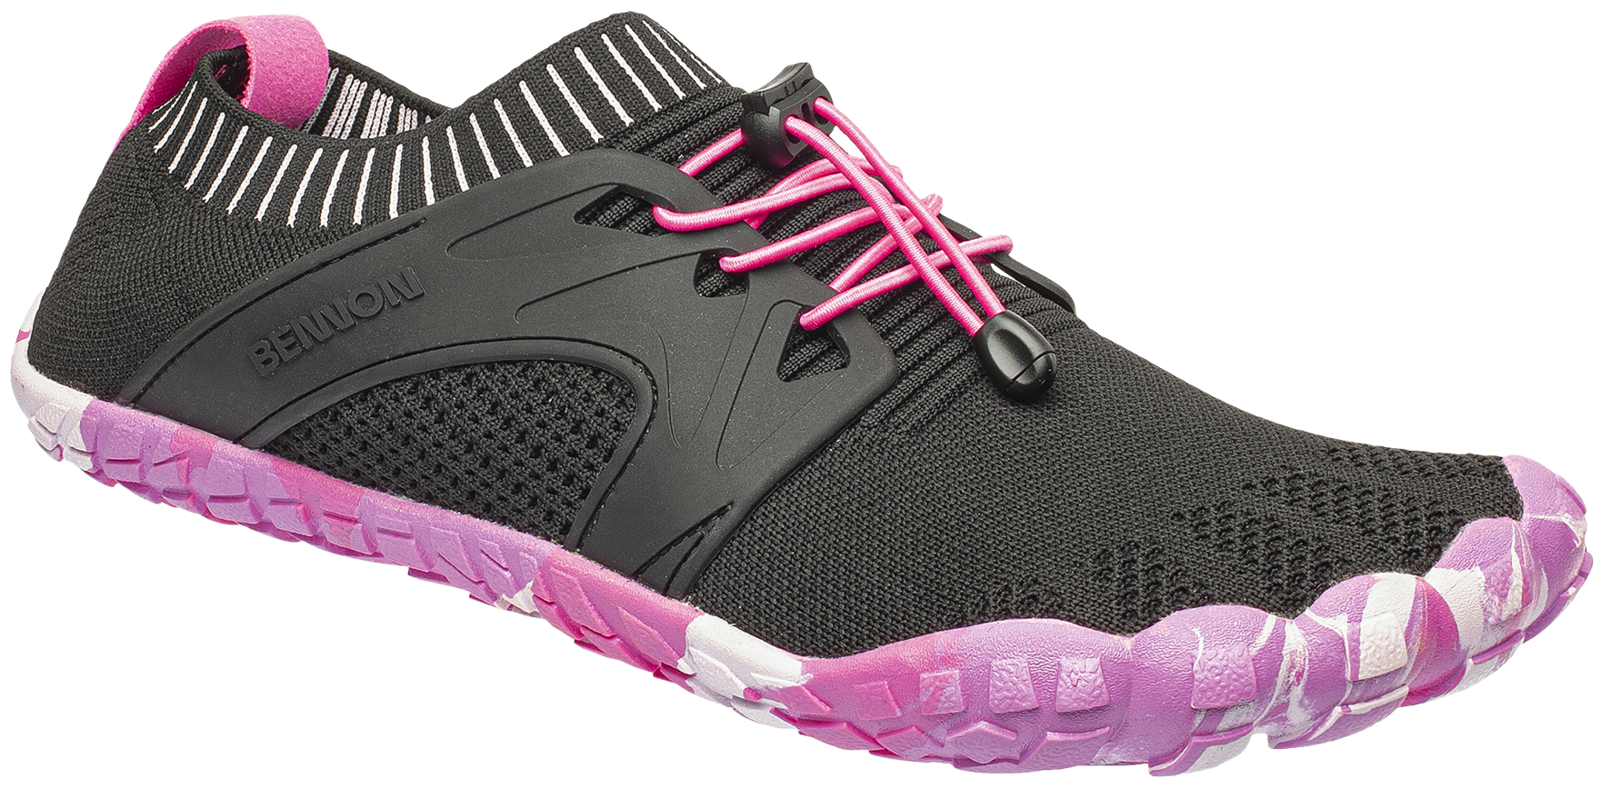 Voľnočasová barefoot obuv Bennon Bosky - veľkosť: 41, farba: čierna/ružová